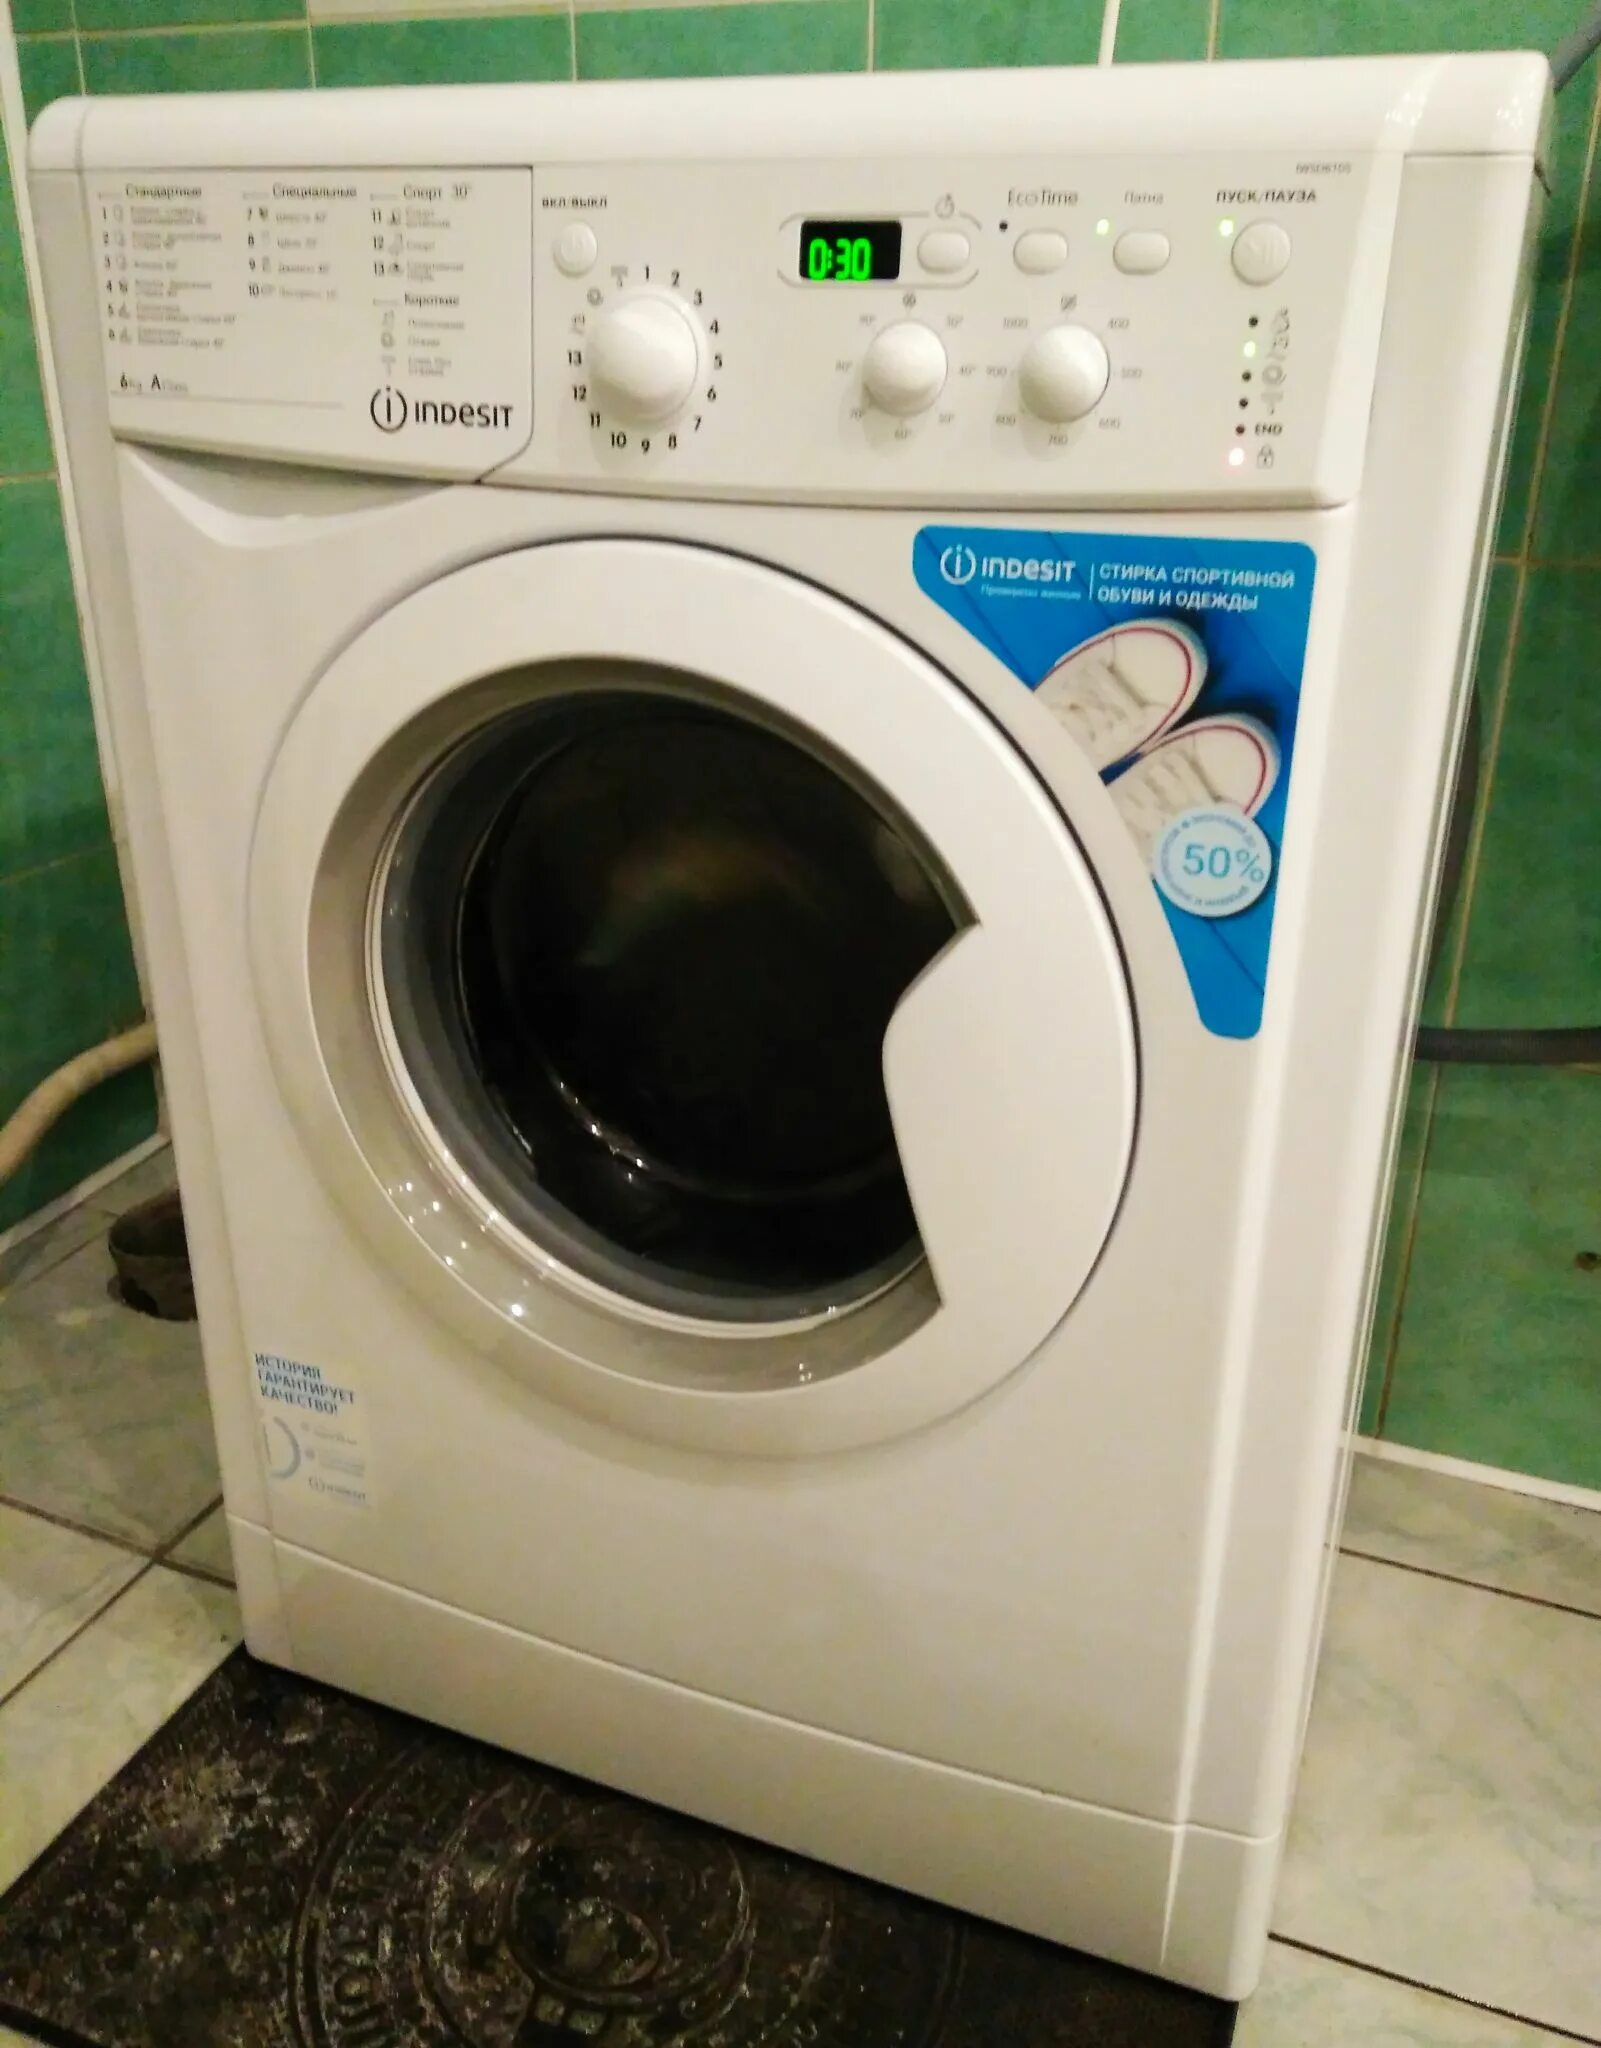 Машинка стиральная BWSE 6105. Купить стиралку индезит